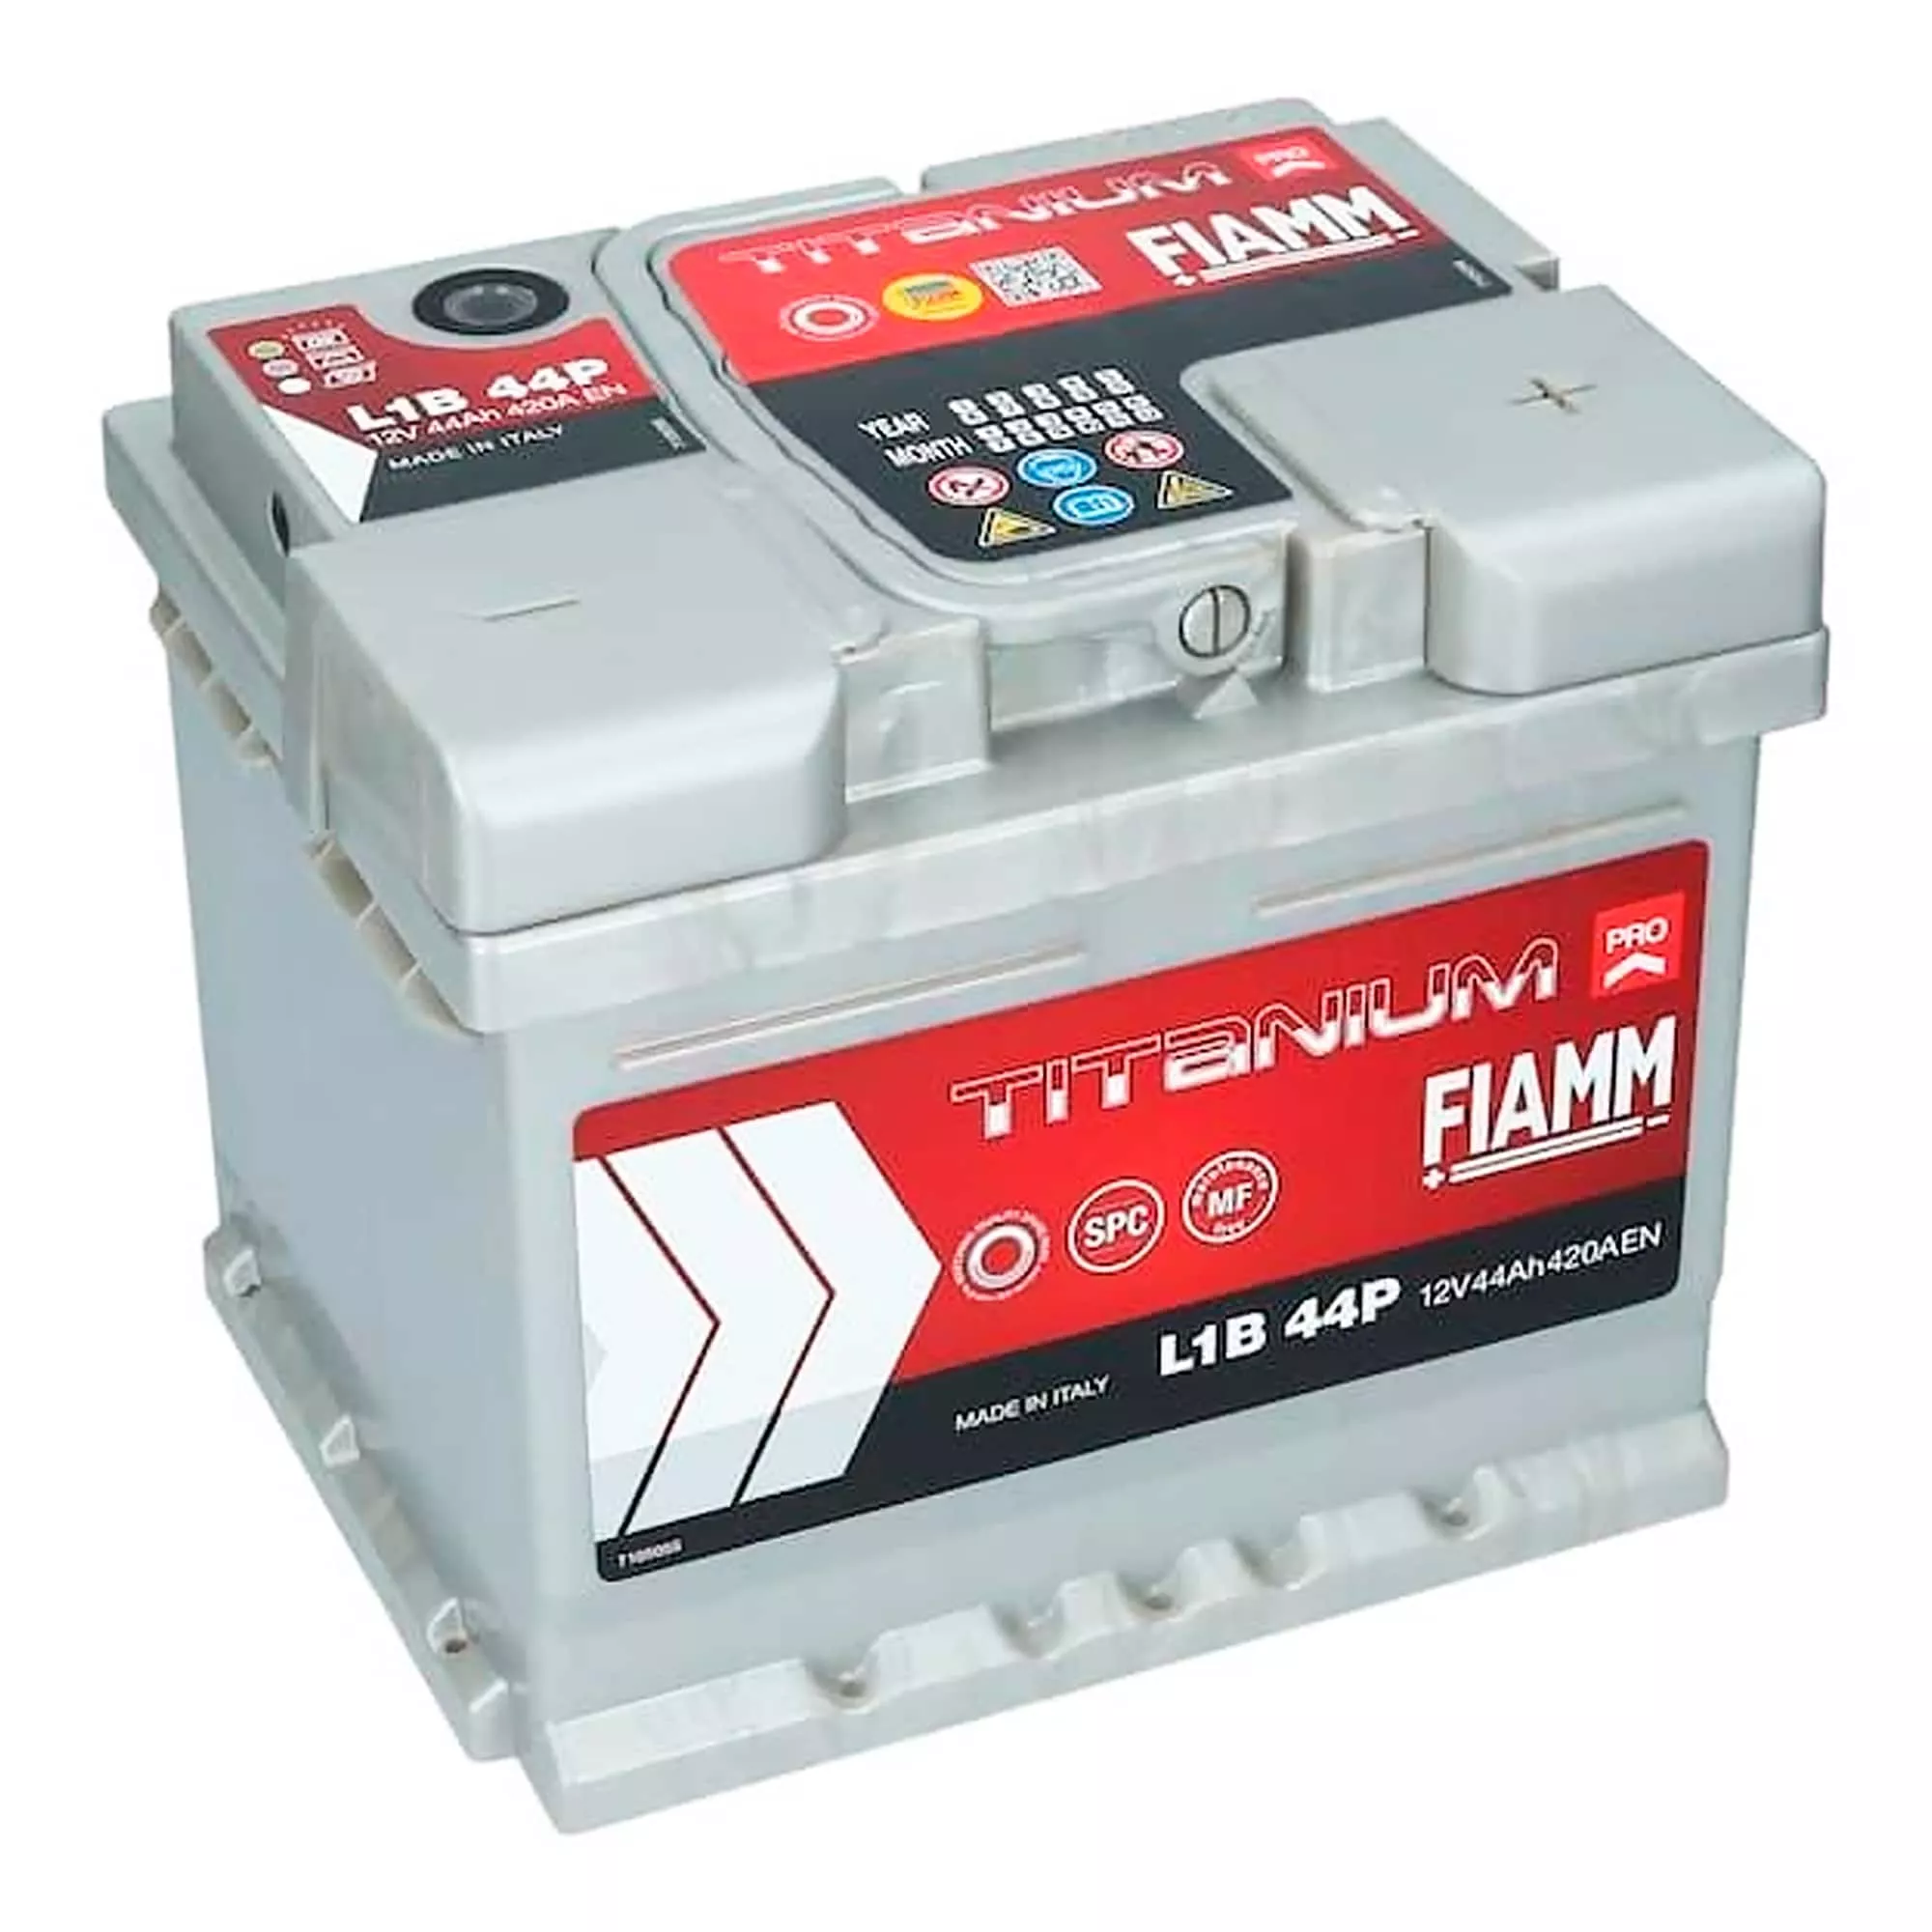 Автомобильный аккумулятор Fiamm Titanium Pro L1B 44P 6СТ-44Ah 420A АзЕ (7905142)